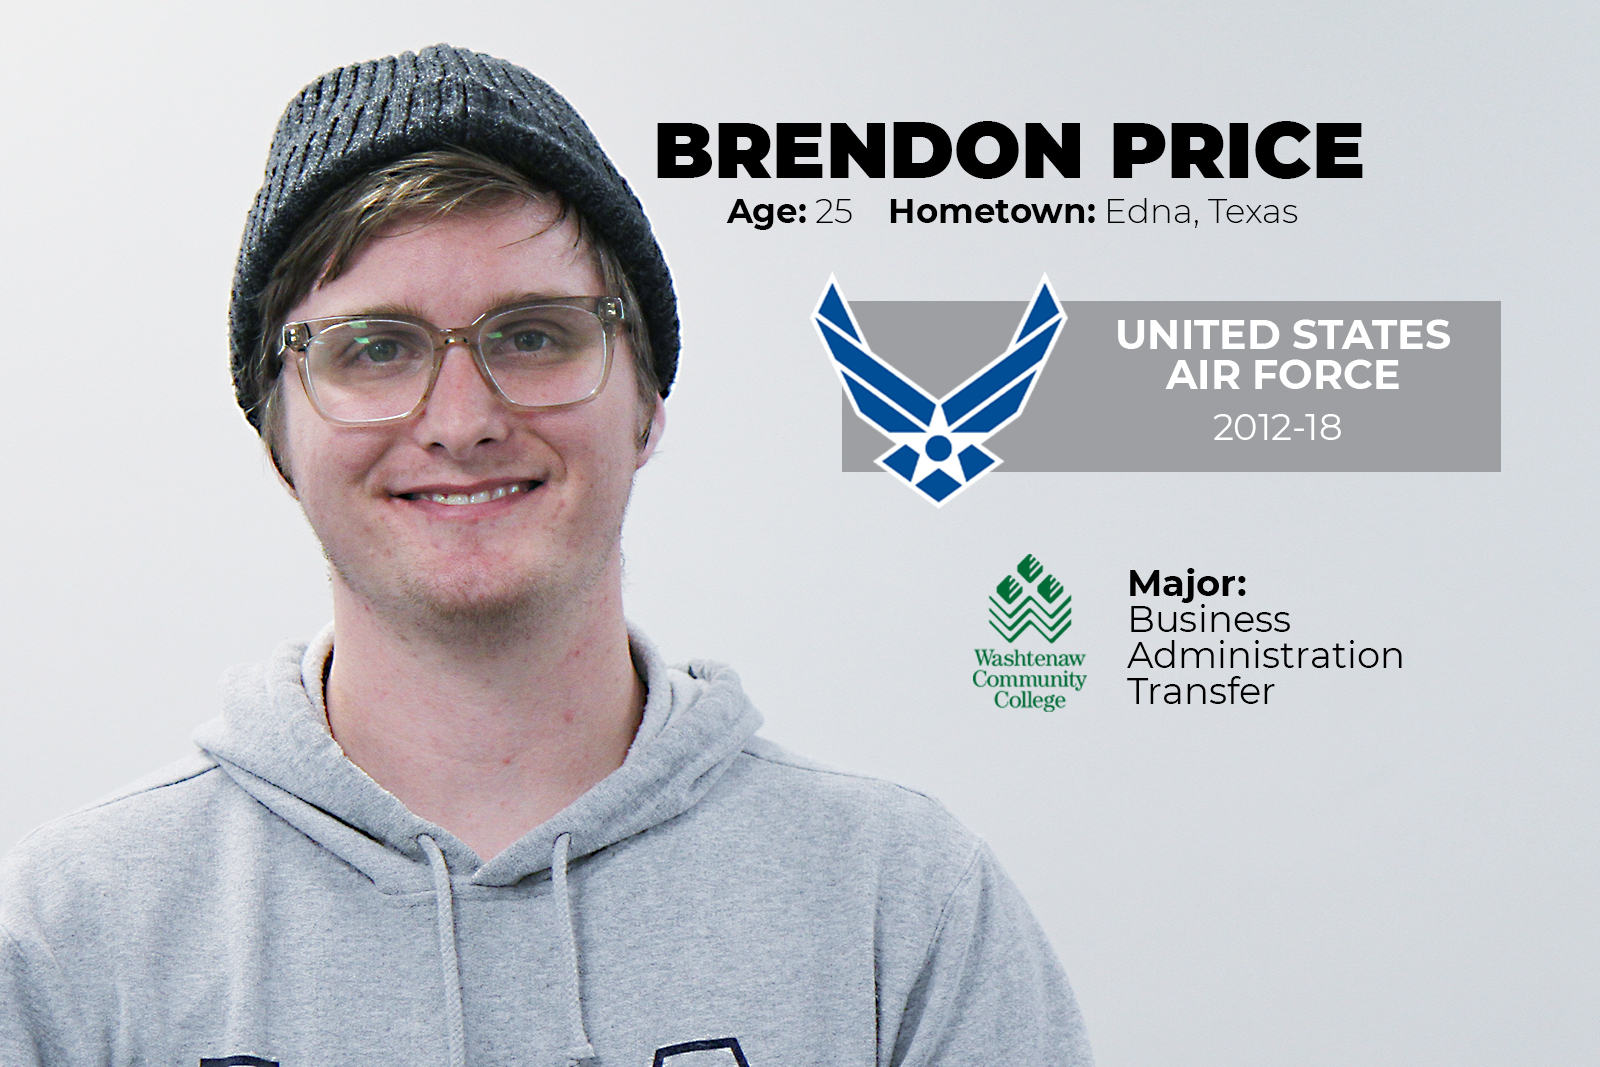 Brendon Price